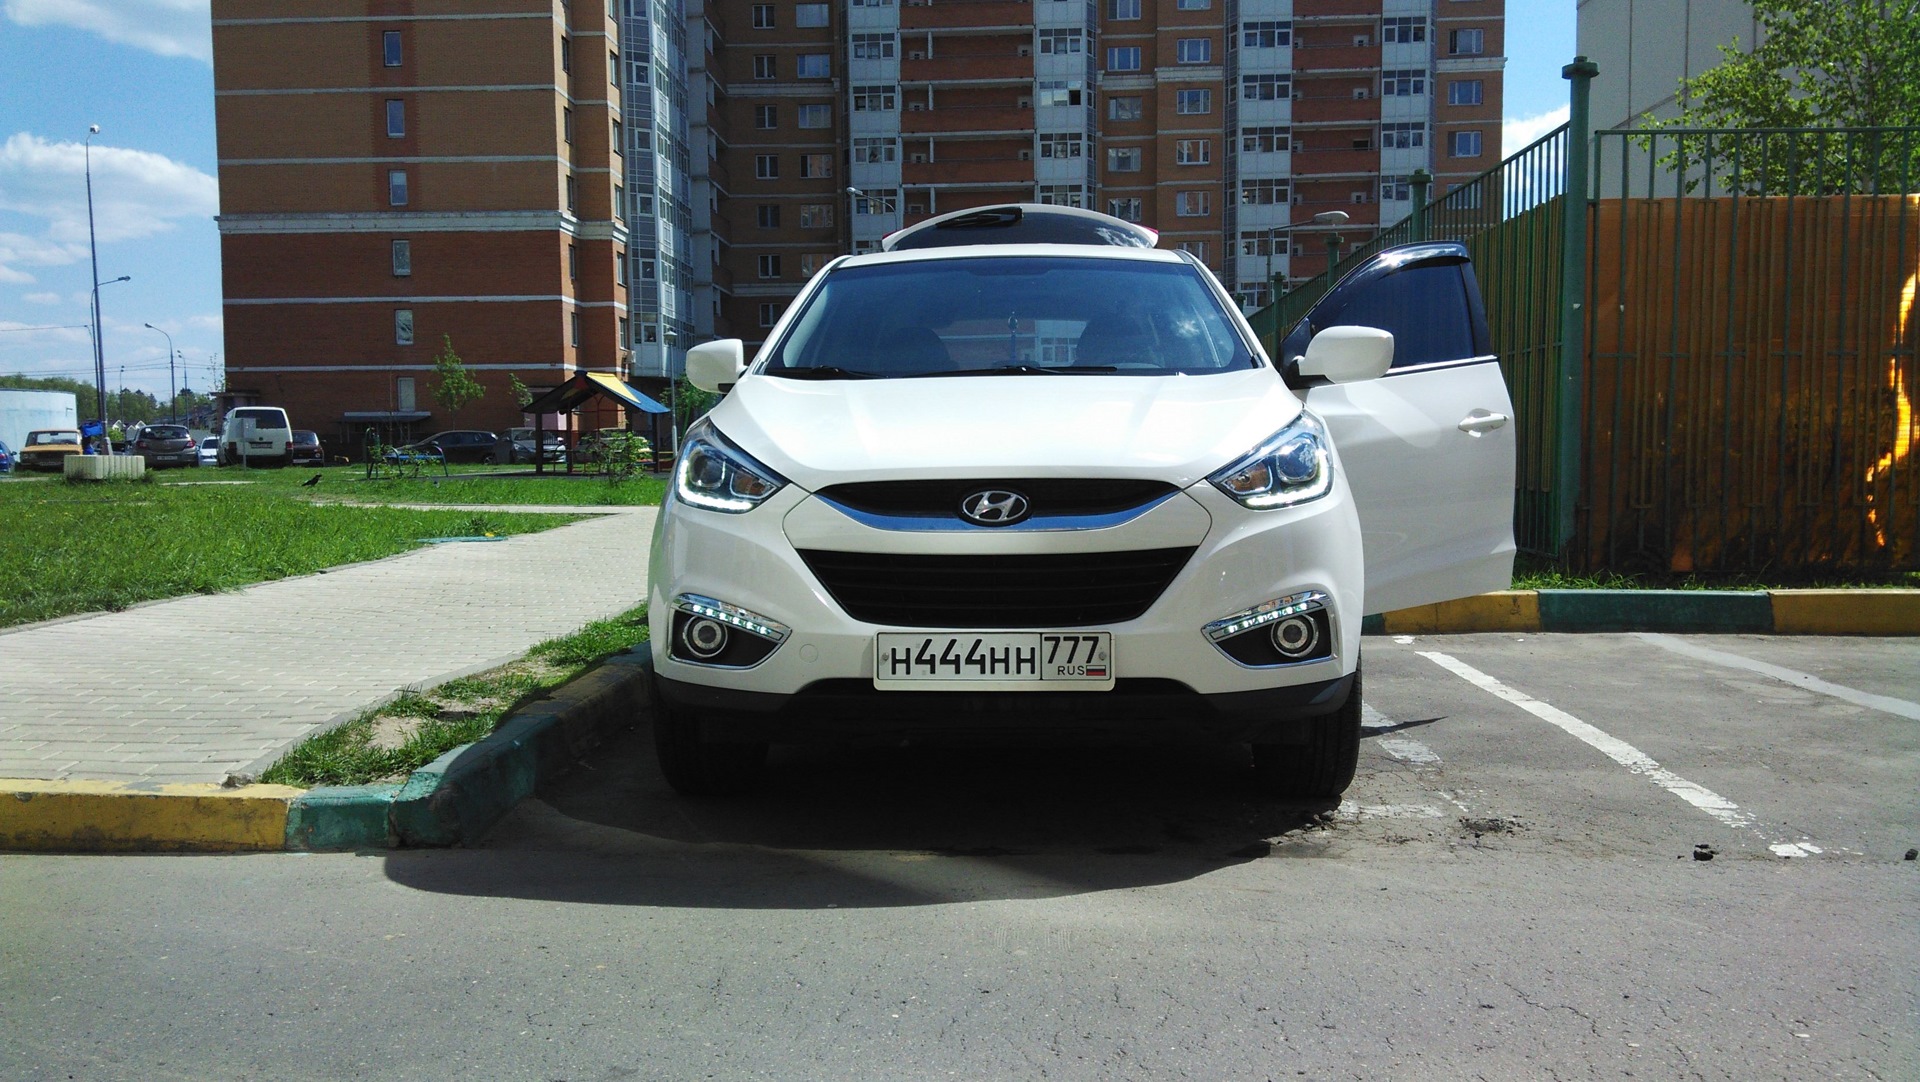 Ксенон 21 век. Ксенон в Hyundai ix35. Hyundai ix35 2014 белый реализация залогового имущества. Хёндай их 35 2012 года гос номер. Ксеноновые фары в темноте Hyundai ix35.